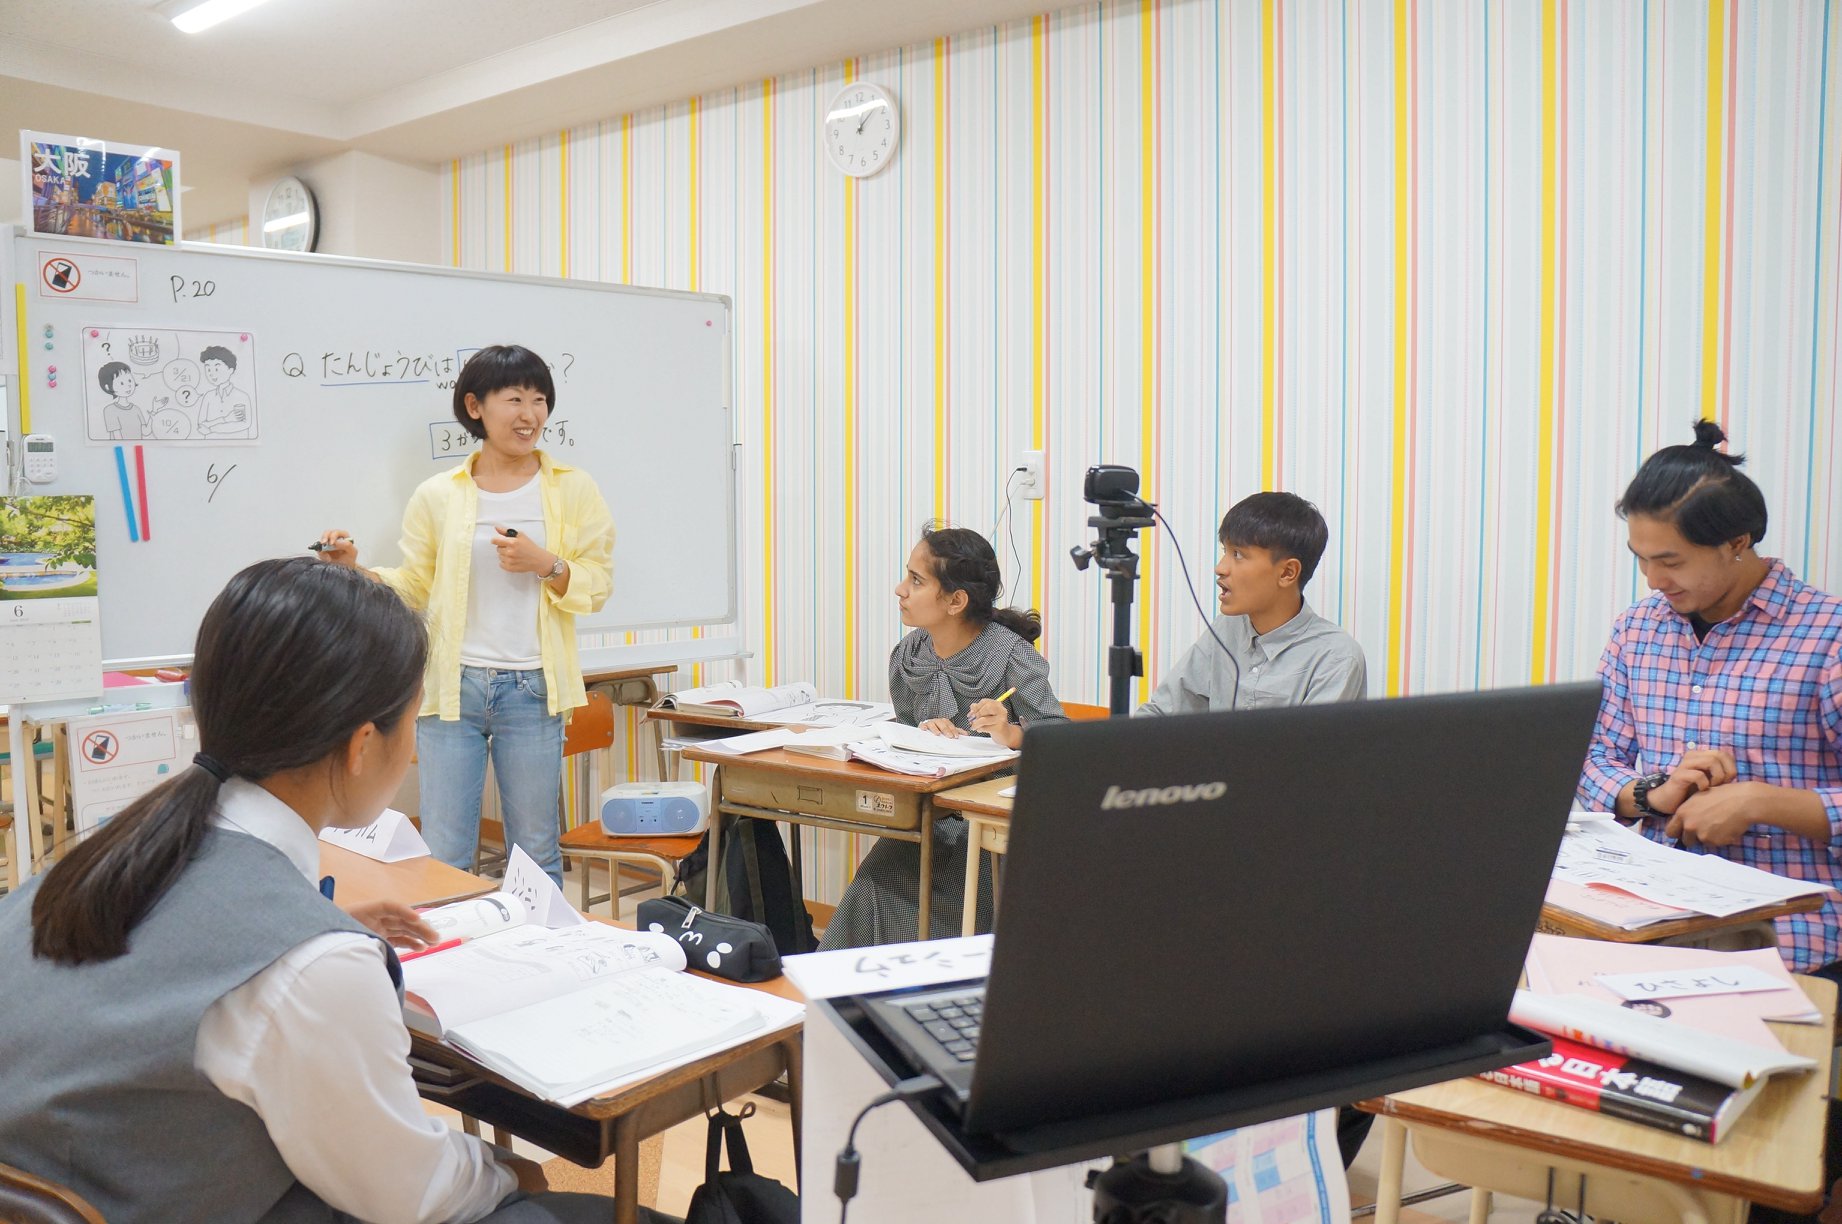 YSCグローバル・スクールでは、子どもの日本語教育専門家による授業のオンライン配信も行っている